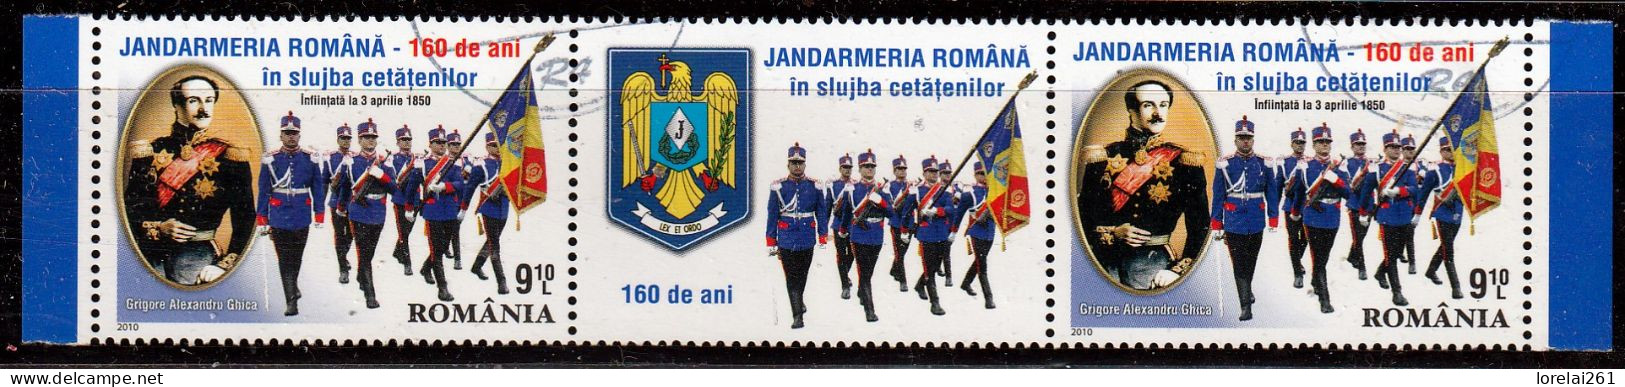 2010 - Gendarmerie Roumaine Mi No  6425 - Usado